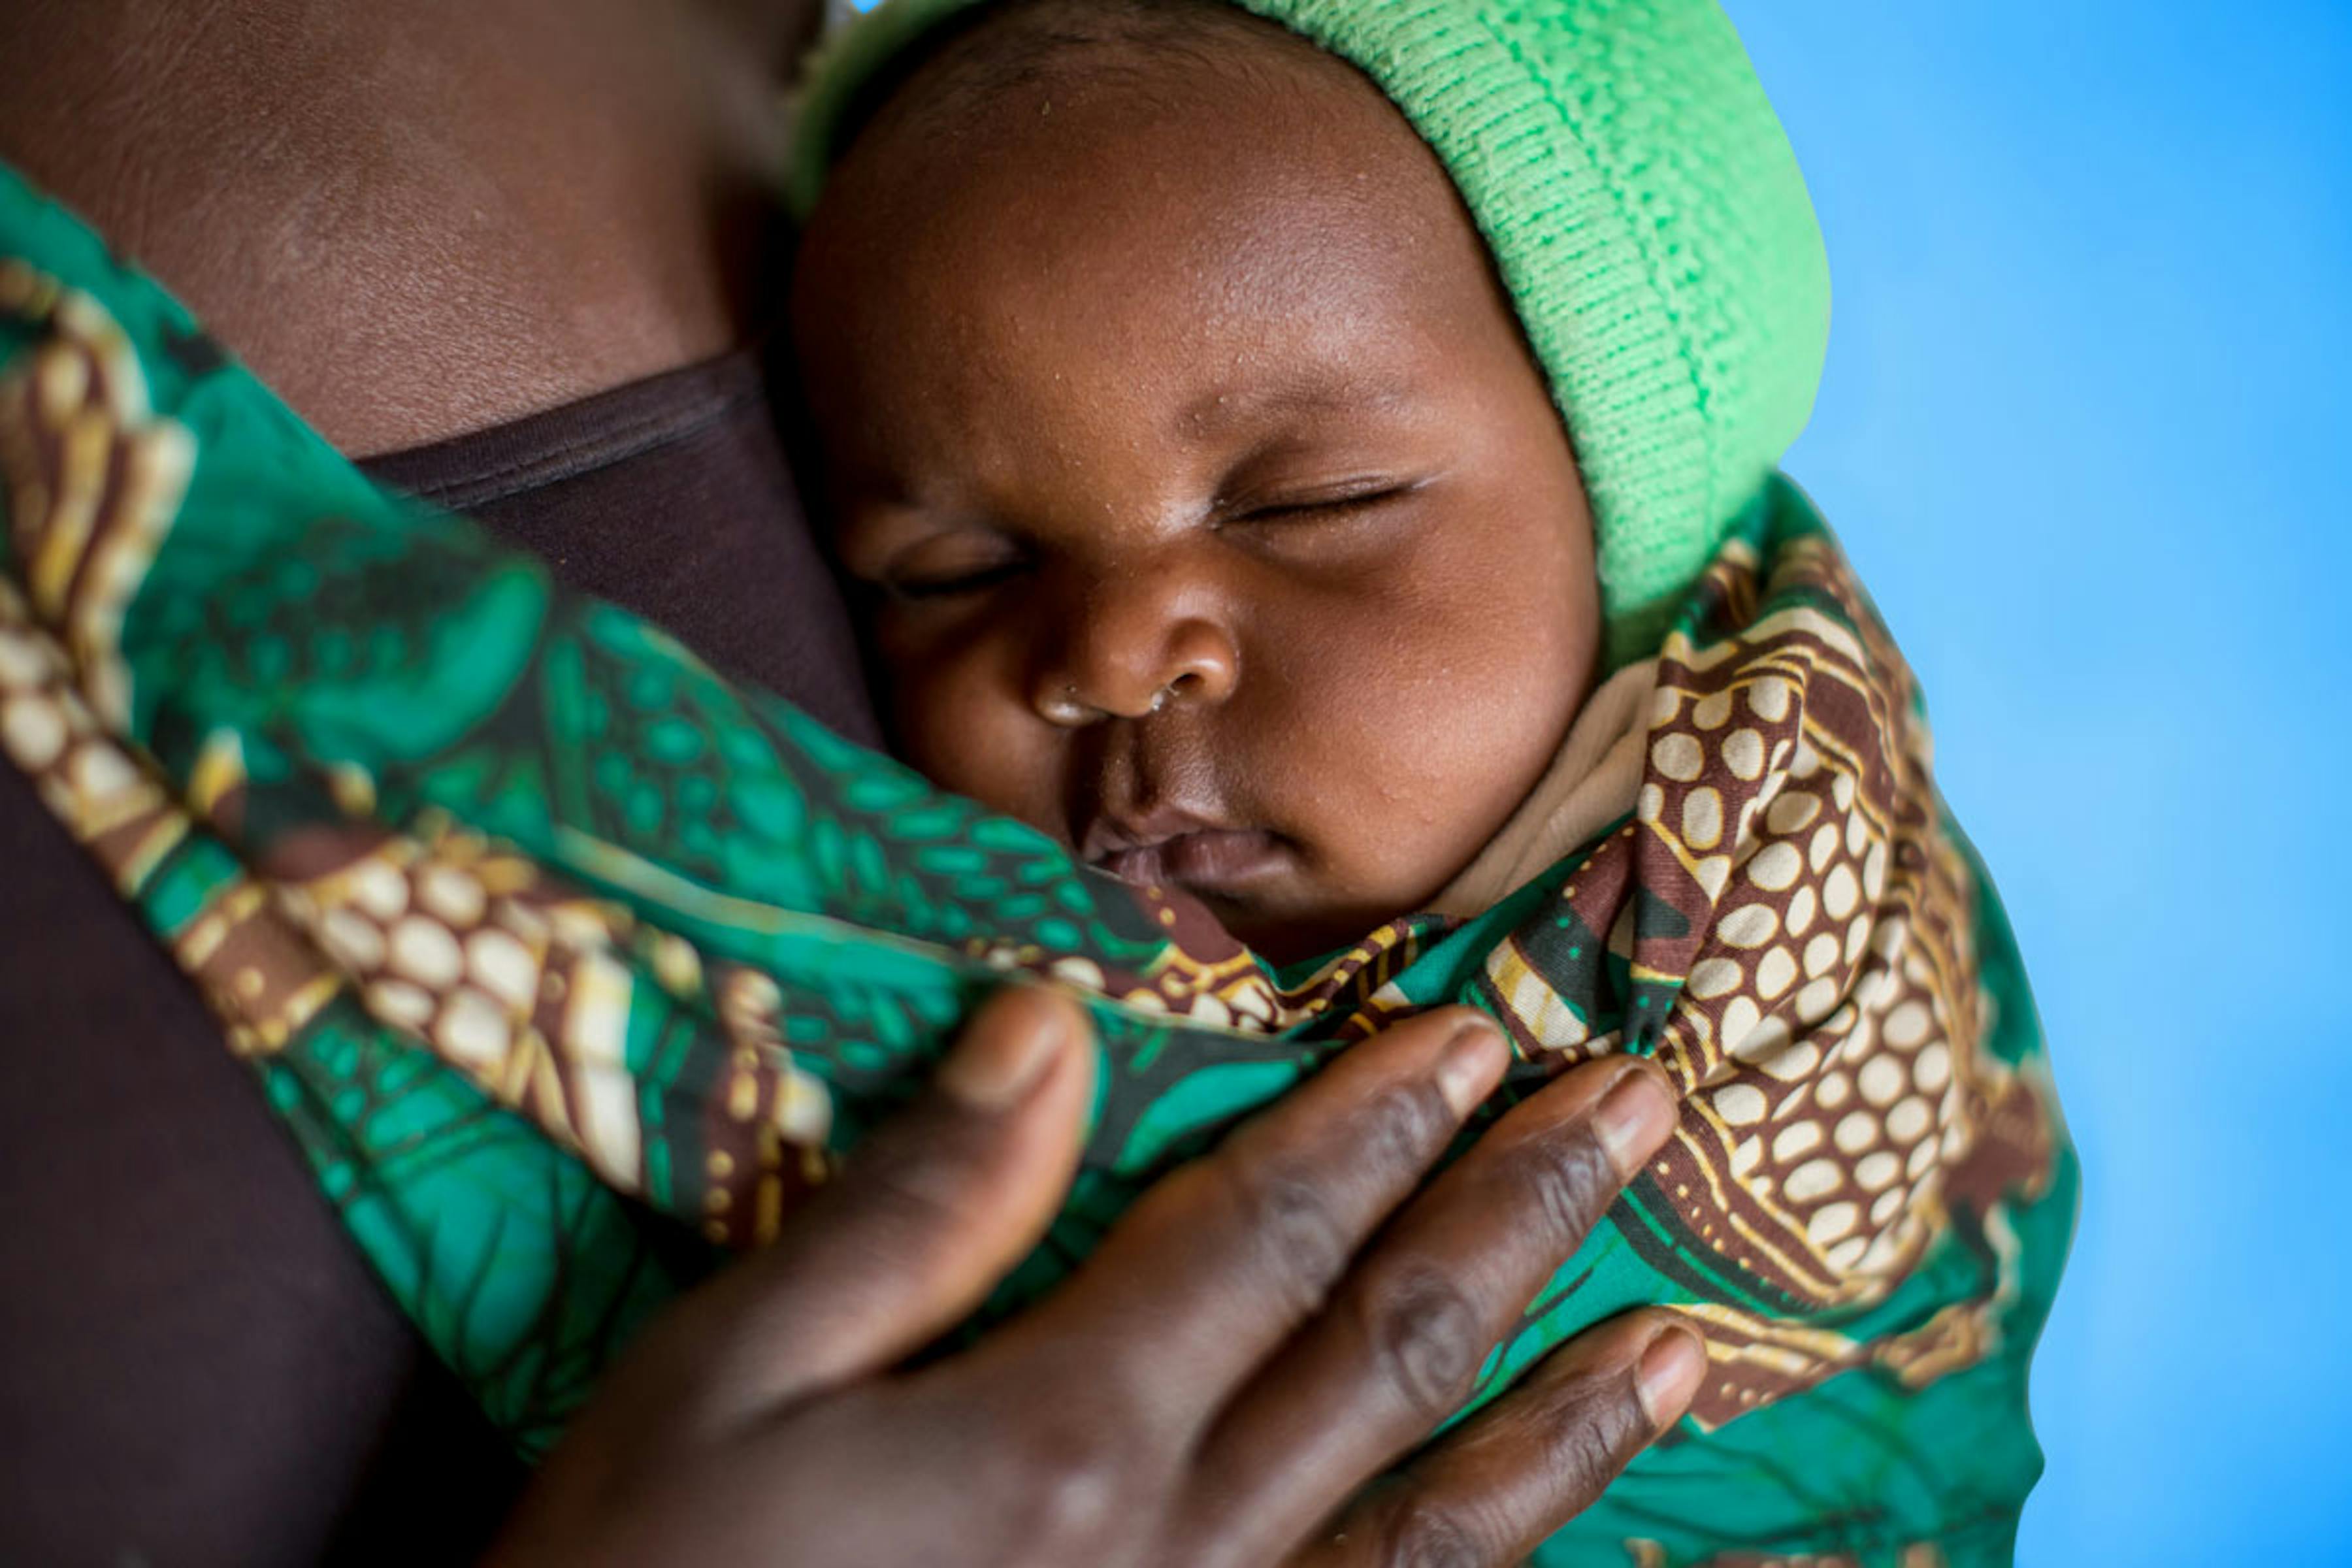 Mamma e bambino al centro sanitario Mfuta nella città di Kasenga (Repubblica Democratica del Congo) - ©UNICEF/UN0136851/Schermbrucker